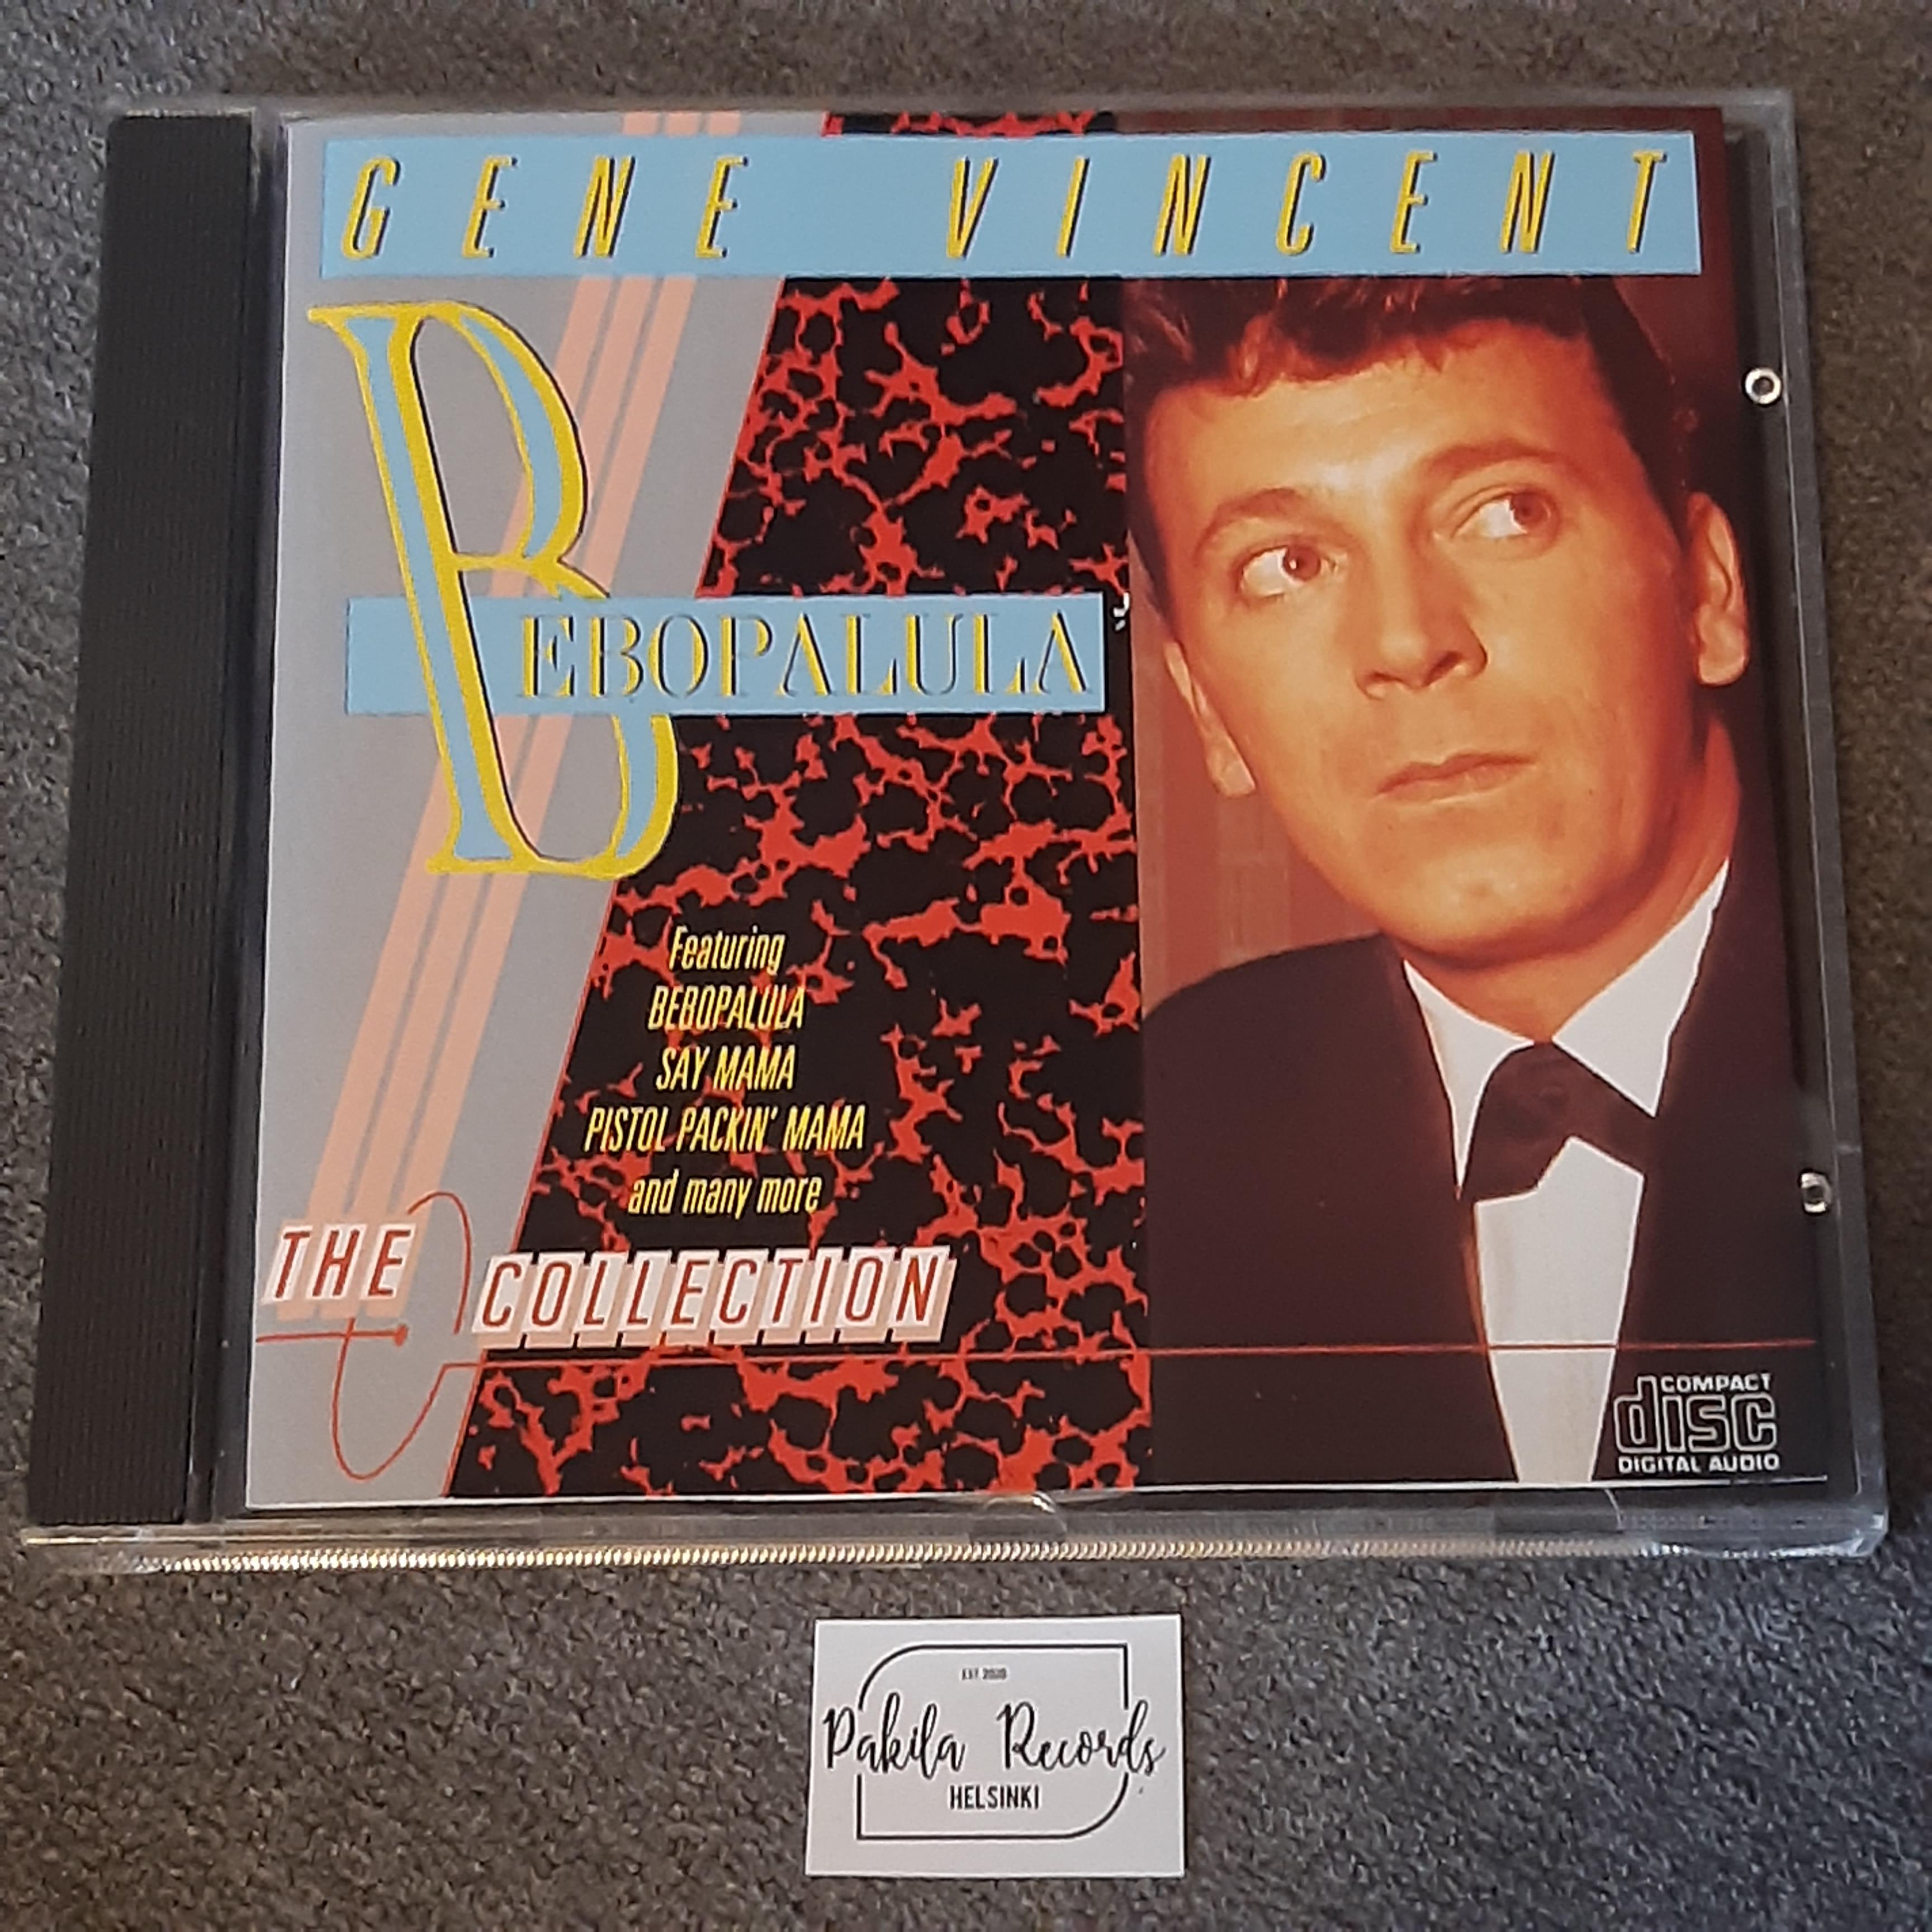 Gene Vincent - Bebopalula - CD (käytetty)